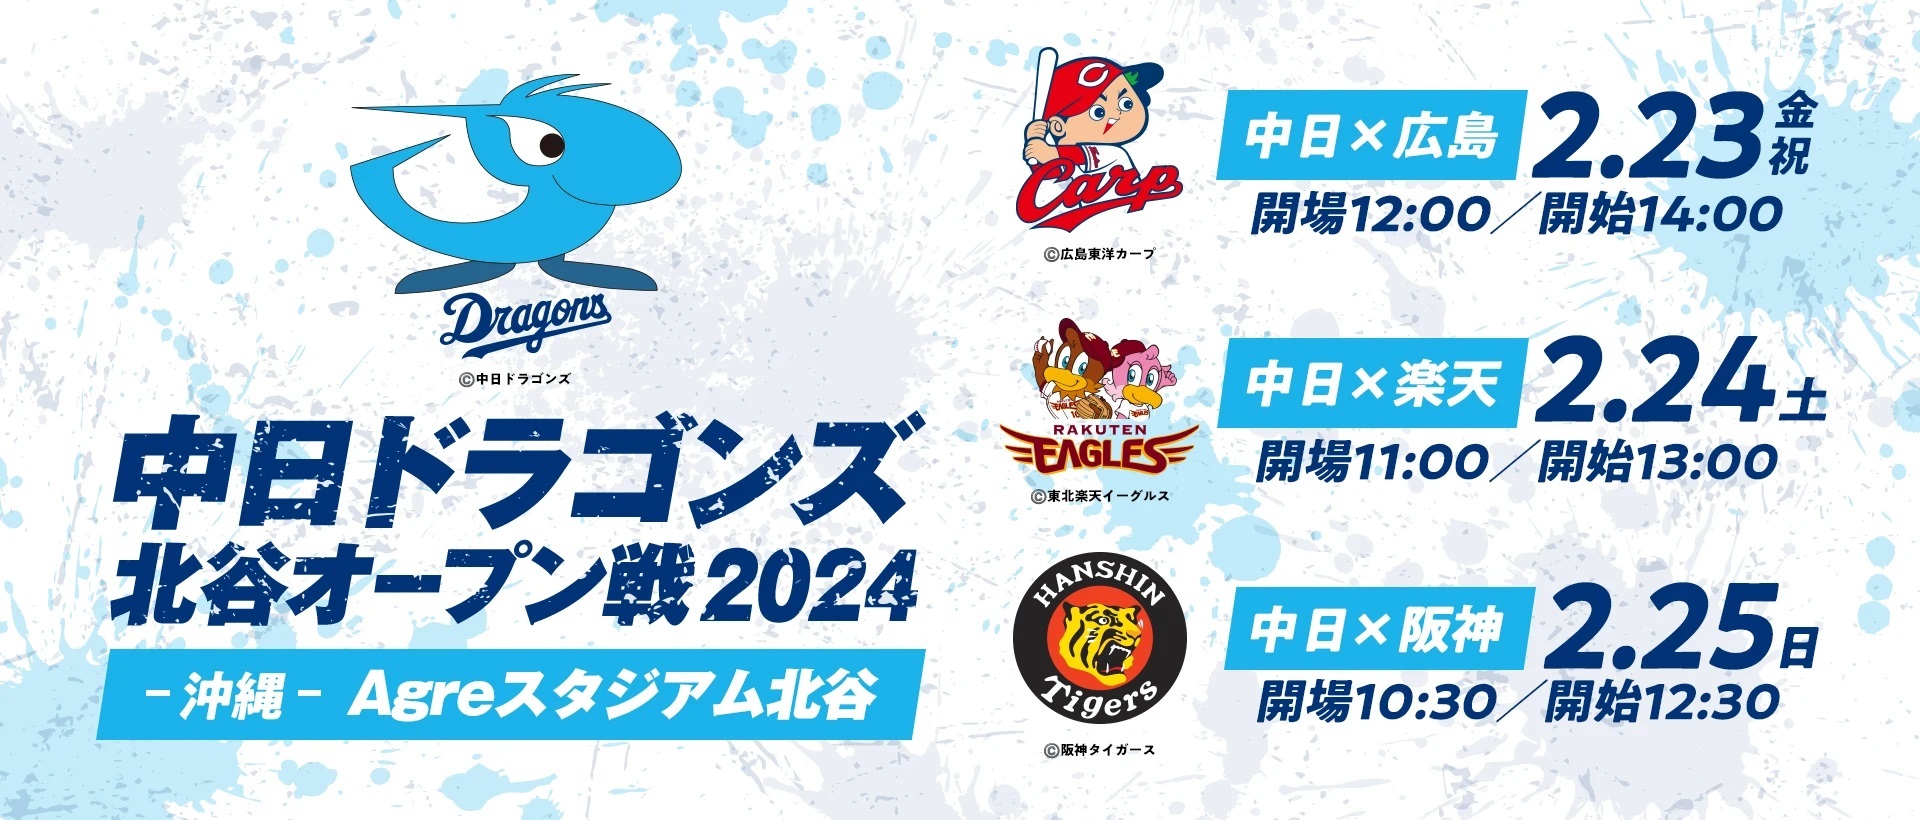 中日ドラゴンズが広島東洋カープ・東北楽天ゴールデンイーグルス・阪神タイガースとのオープン戦を行う